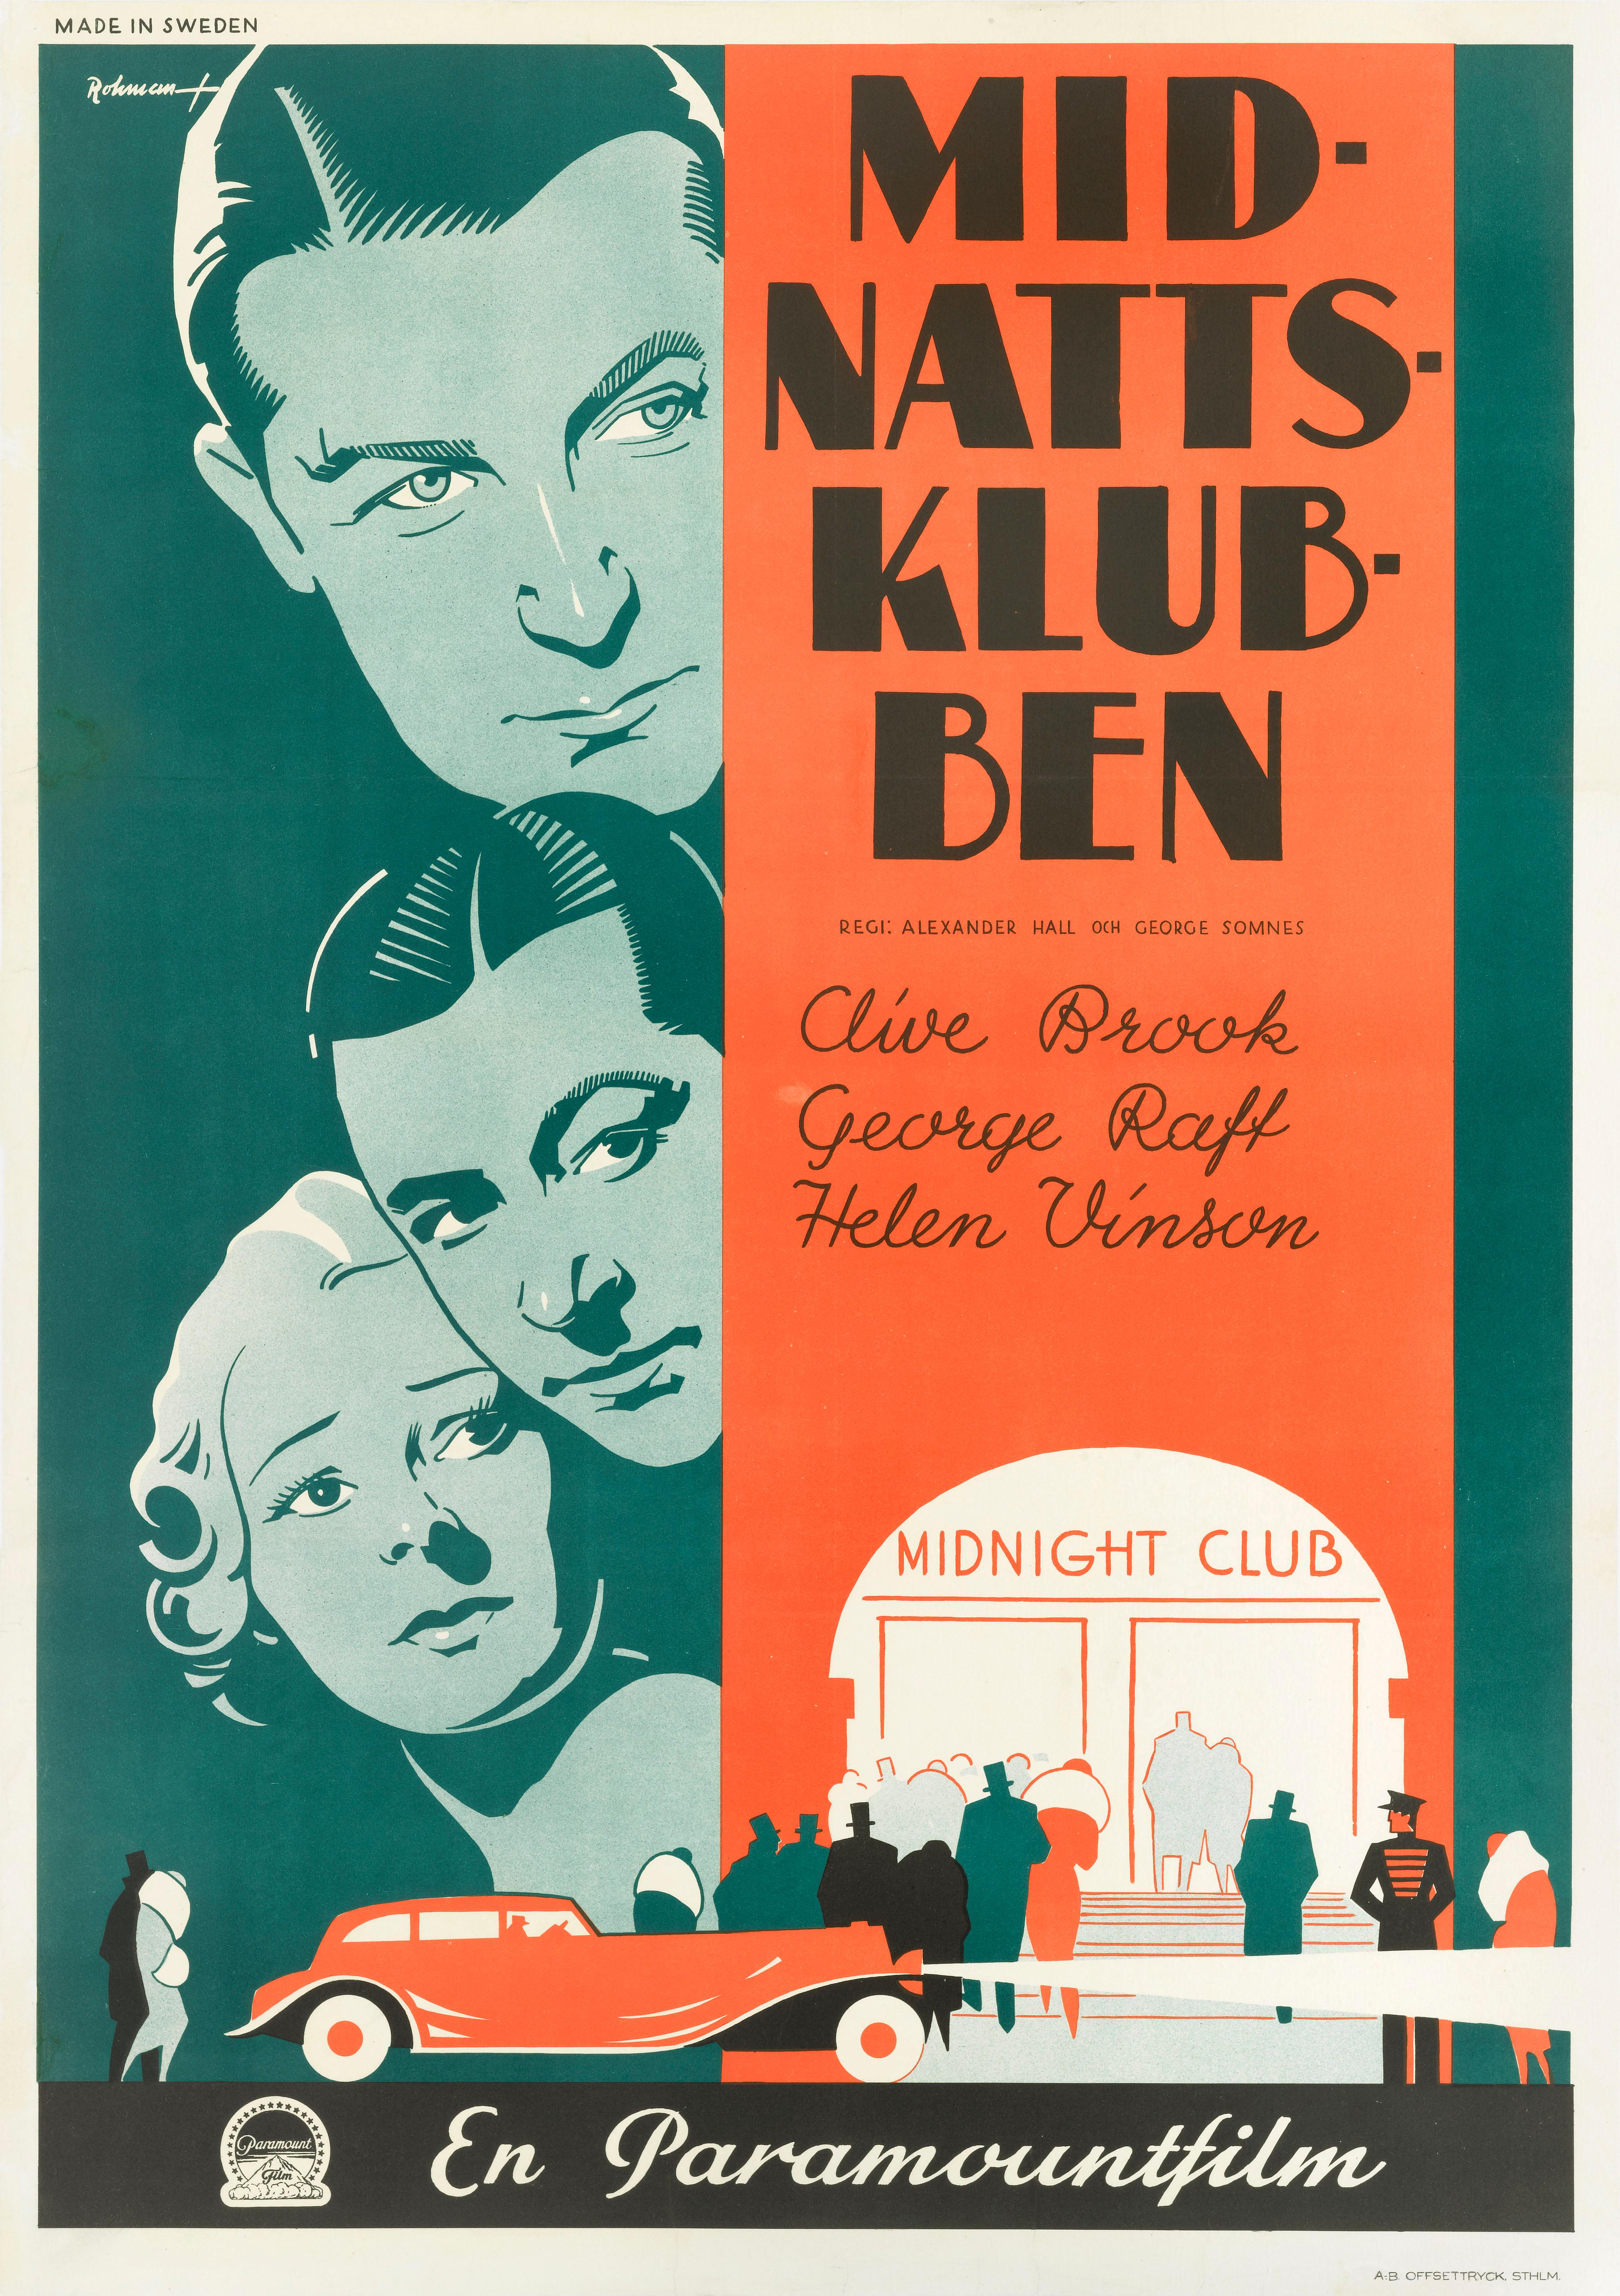 Affiche de film suédoise originale pour le film policier et dramatique américain Midnight Club, 1933.
Le film est réalisé par Alexander Hall et George Somnes et met en vedette Clive Brook, Gorge Raff et Helen Vinson.
Cette affiche suédoise